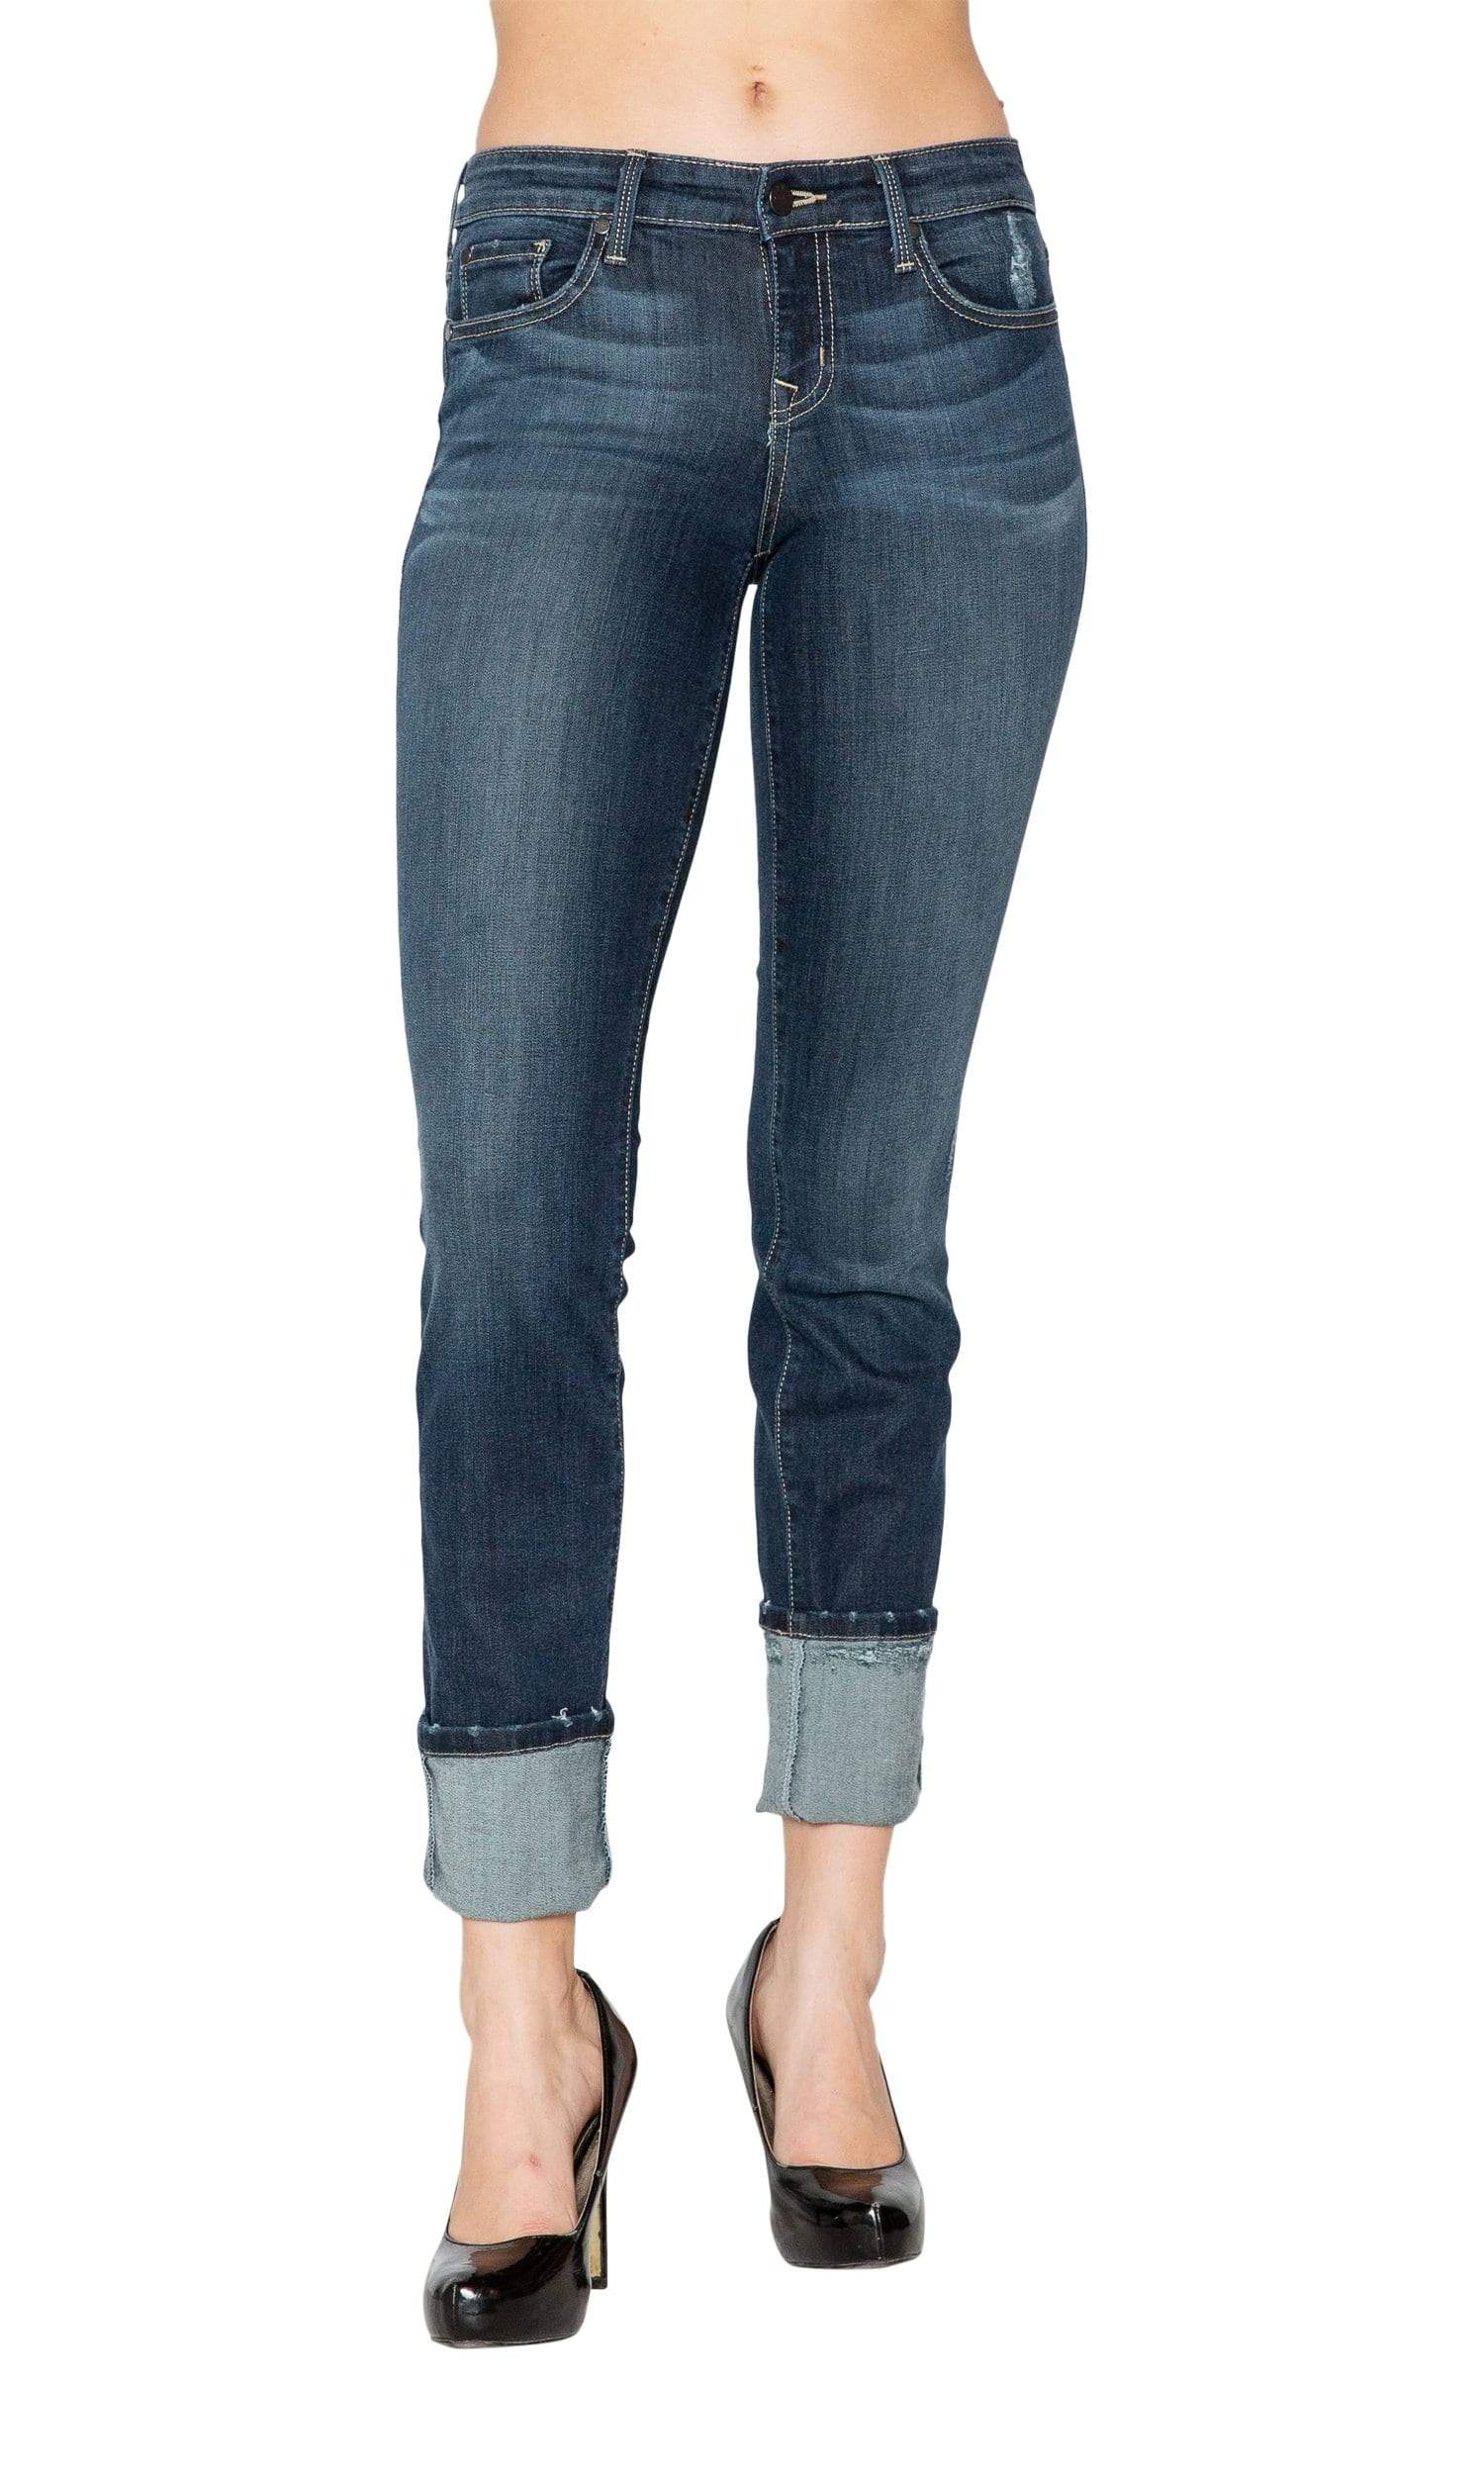 DIP Jeans Size 8 Women's Crop Capris Fringe on bottom beige | eBay